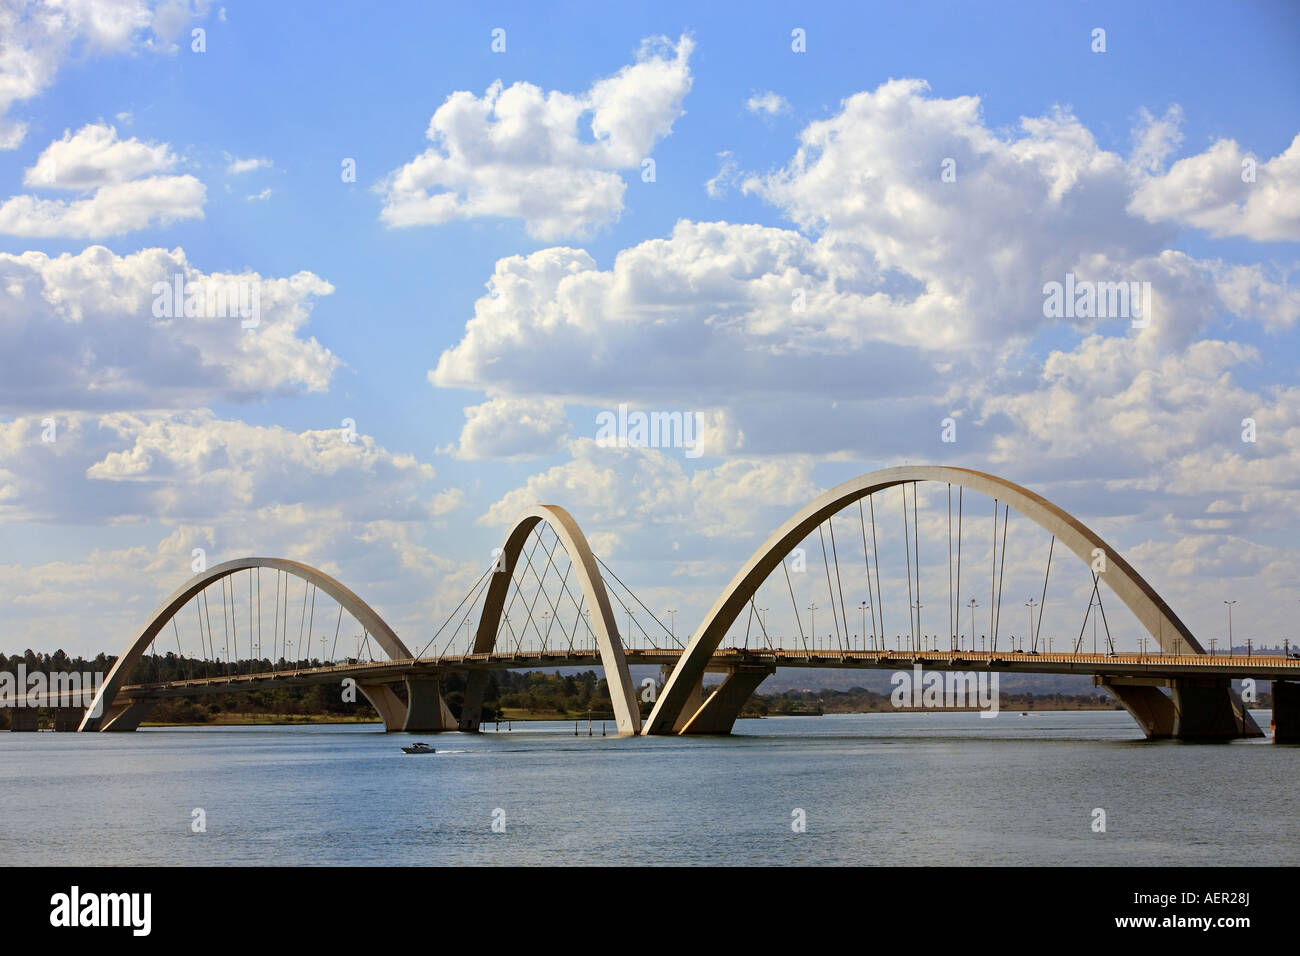 Juscelino Kubitschek bridge dans la ville de Brasilia capitale du Brésil Banque D'Images